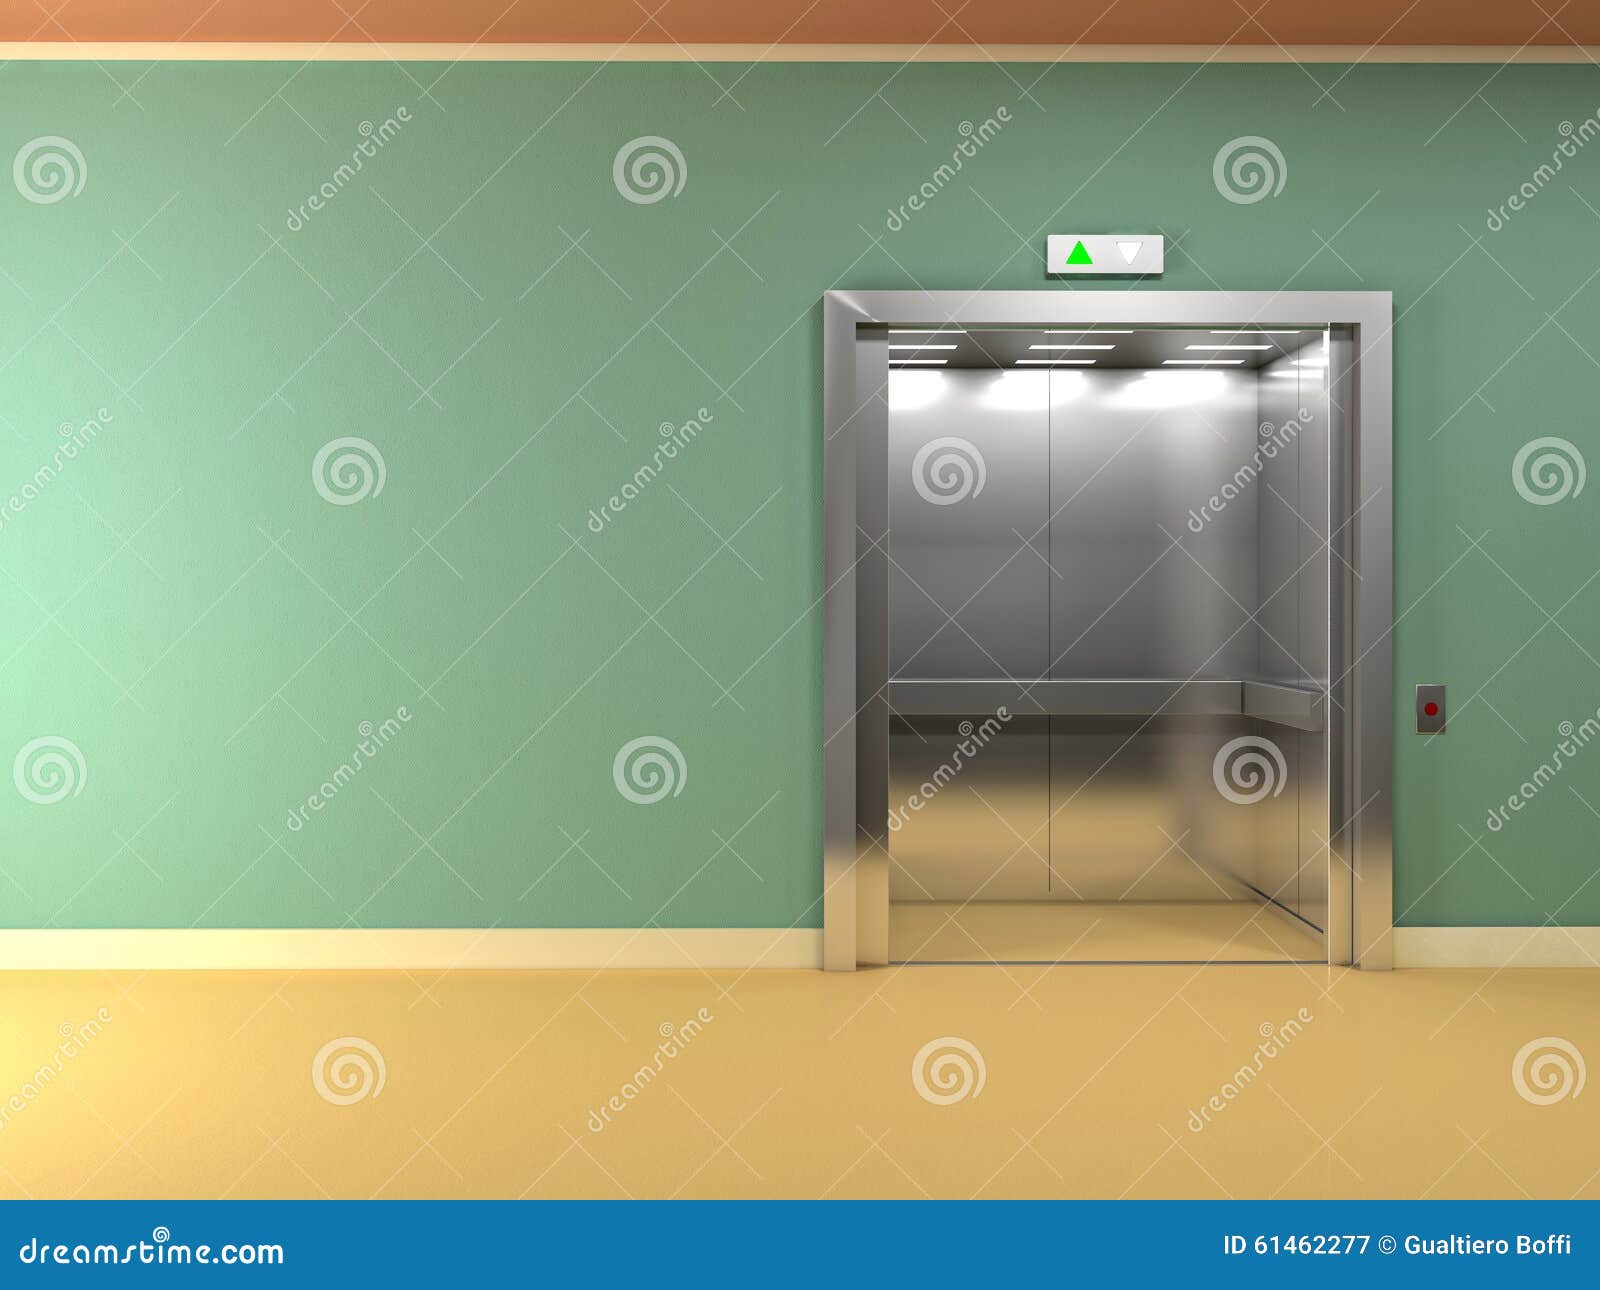 Включи лифт 3. Раздвижные двери лифта. 3 Лифта. Двери лифта текстура. Лифт фон.